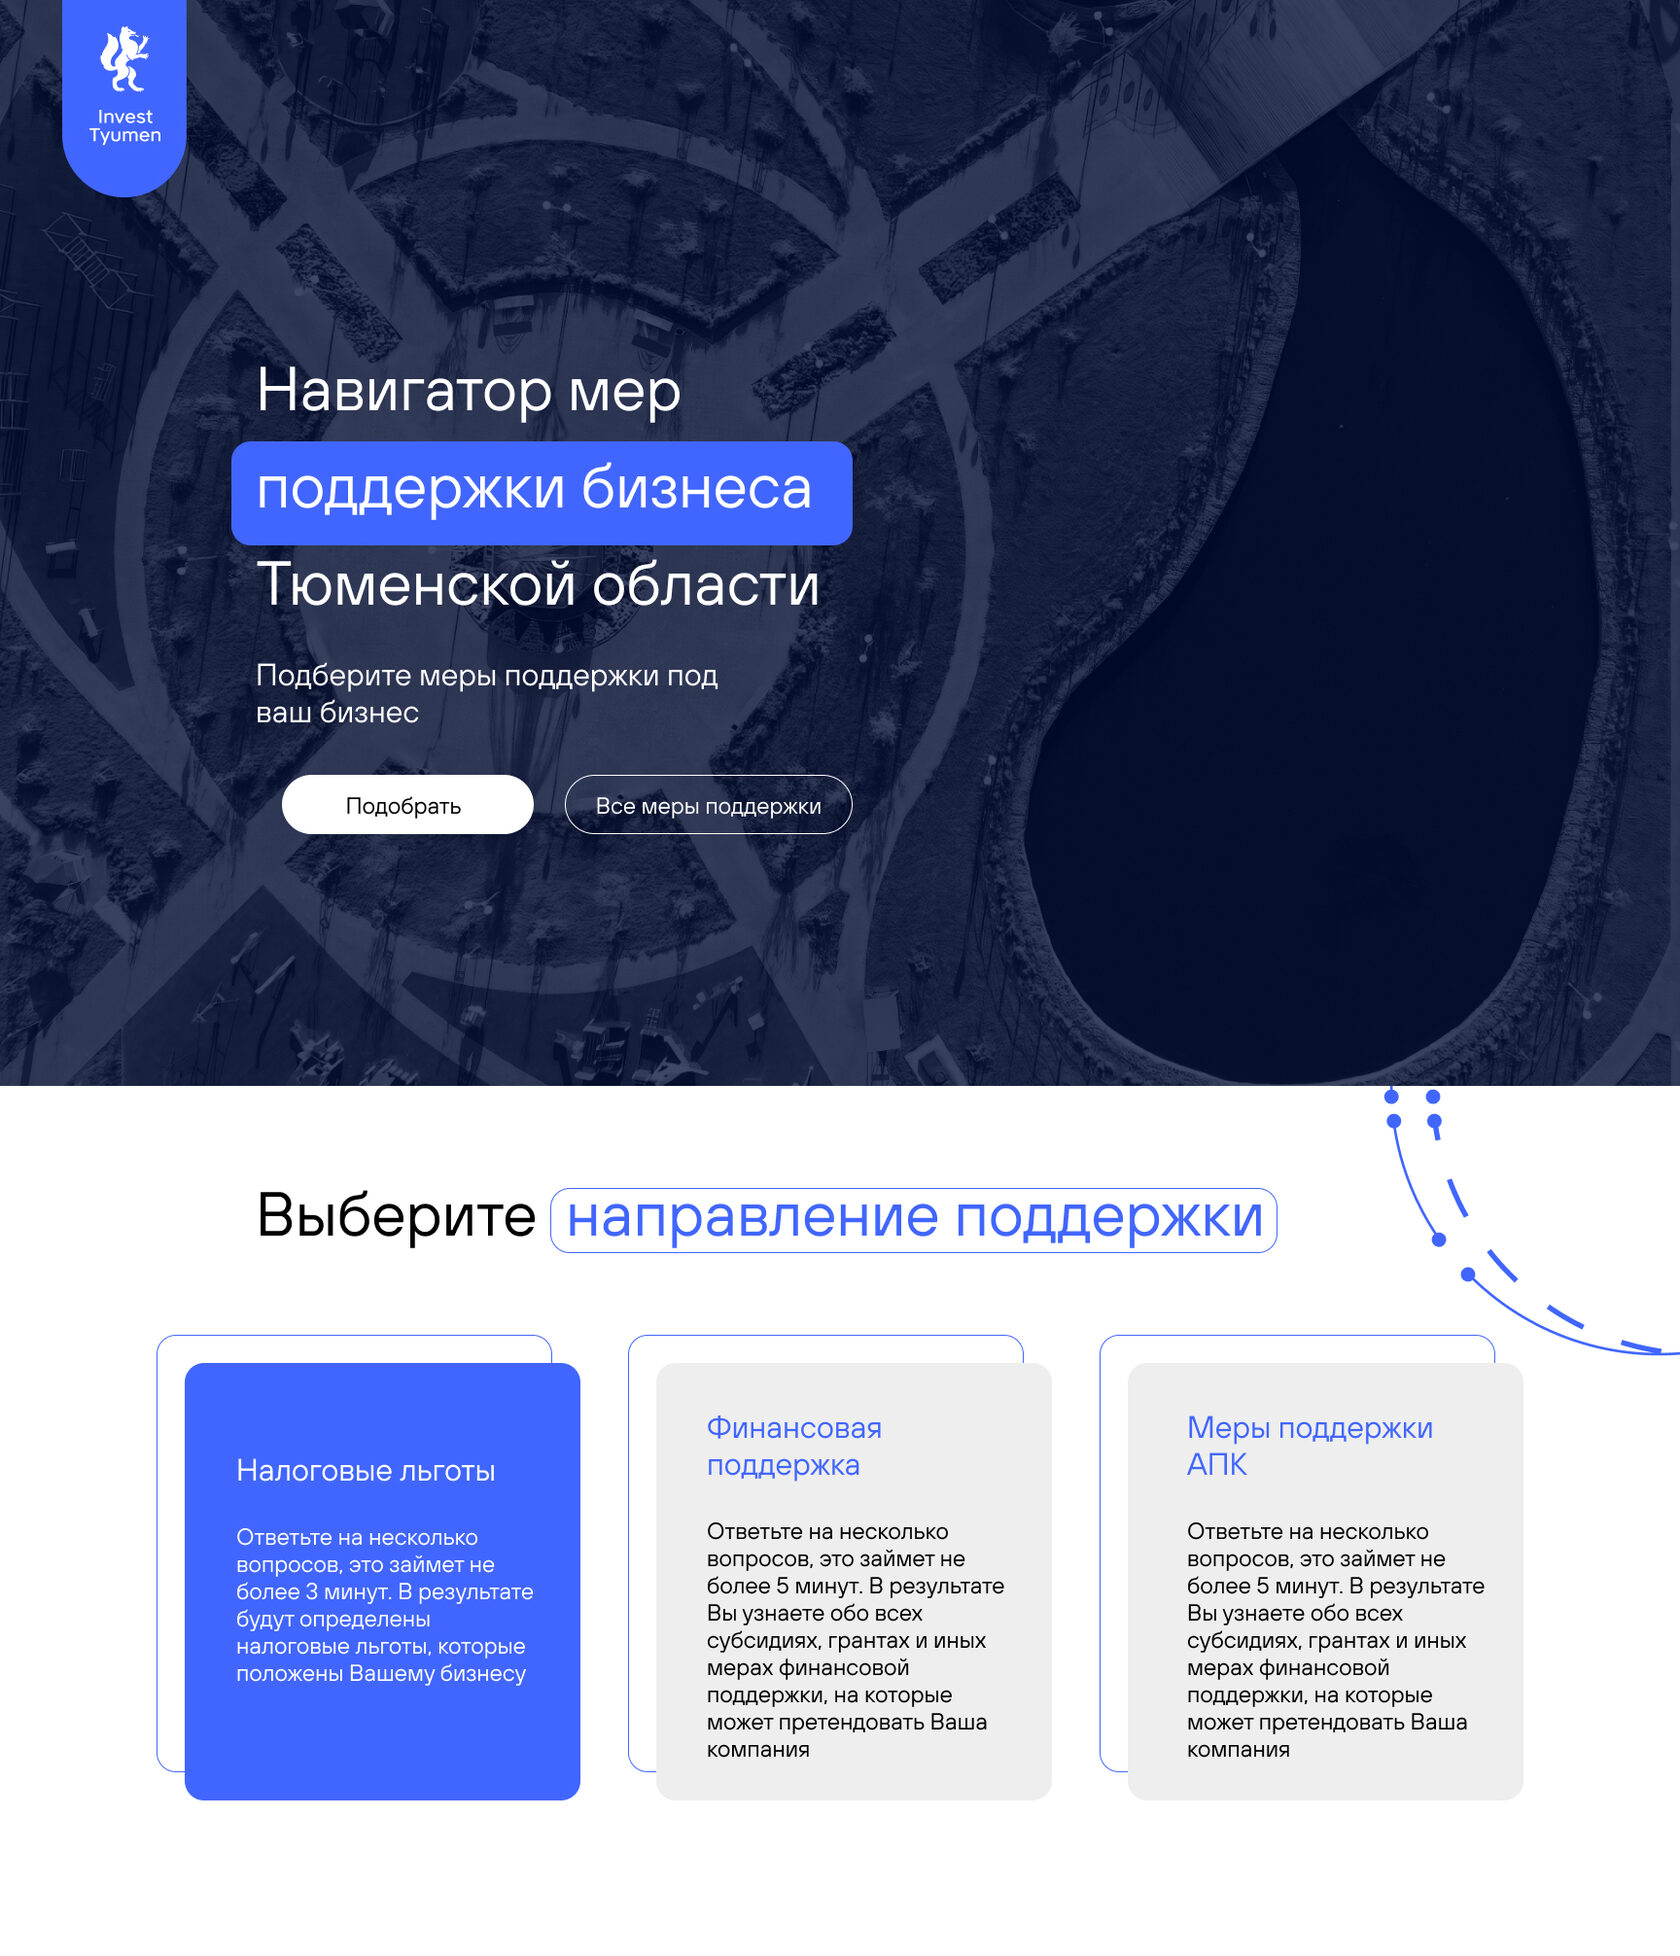 кейс дизайн сайта навигатора поддержки бизнеса тюменской области